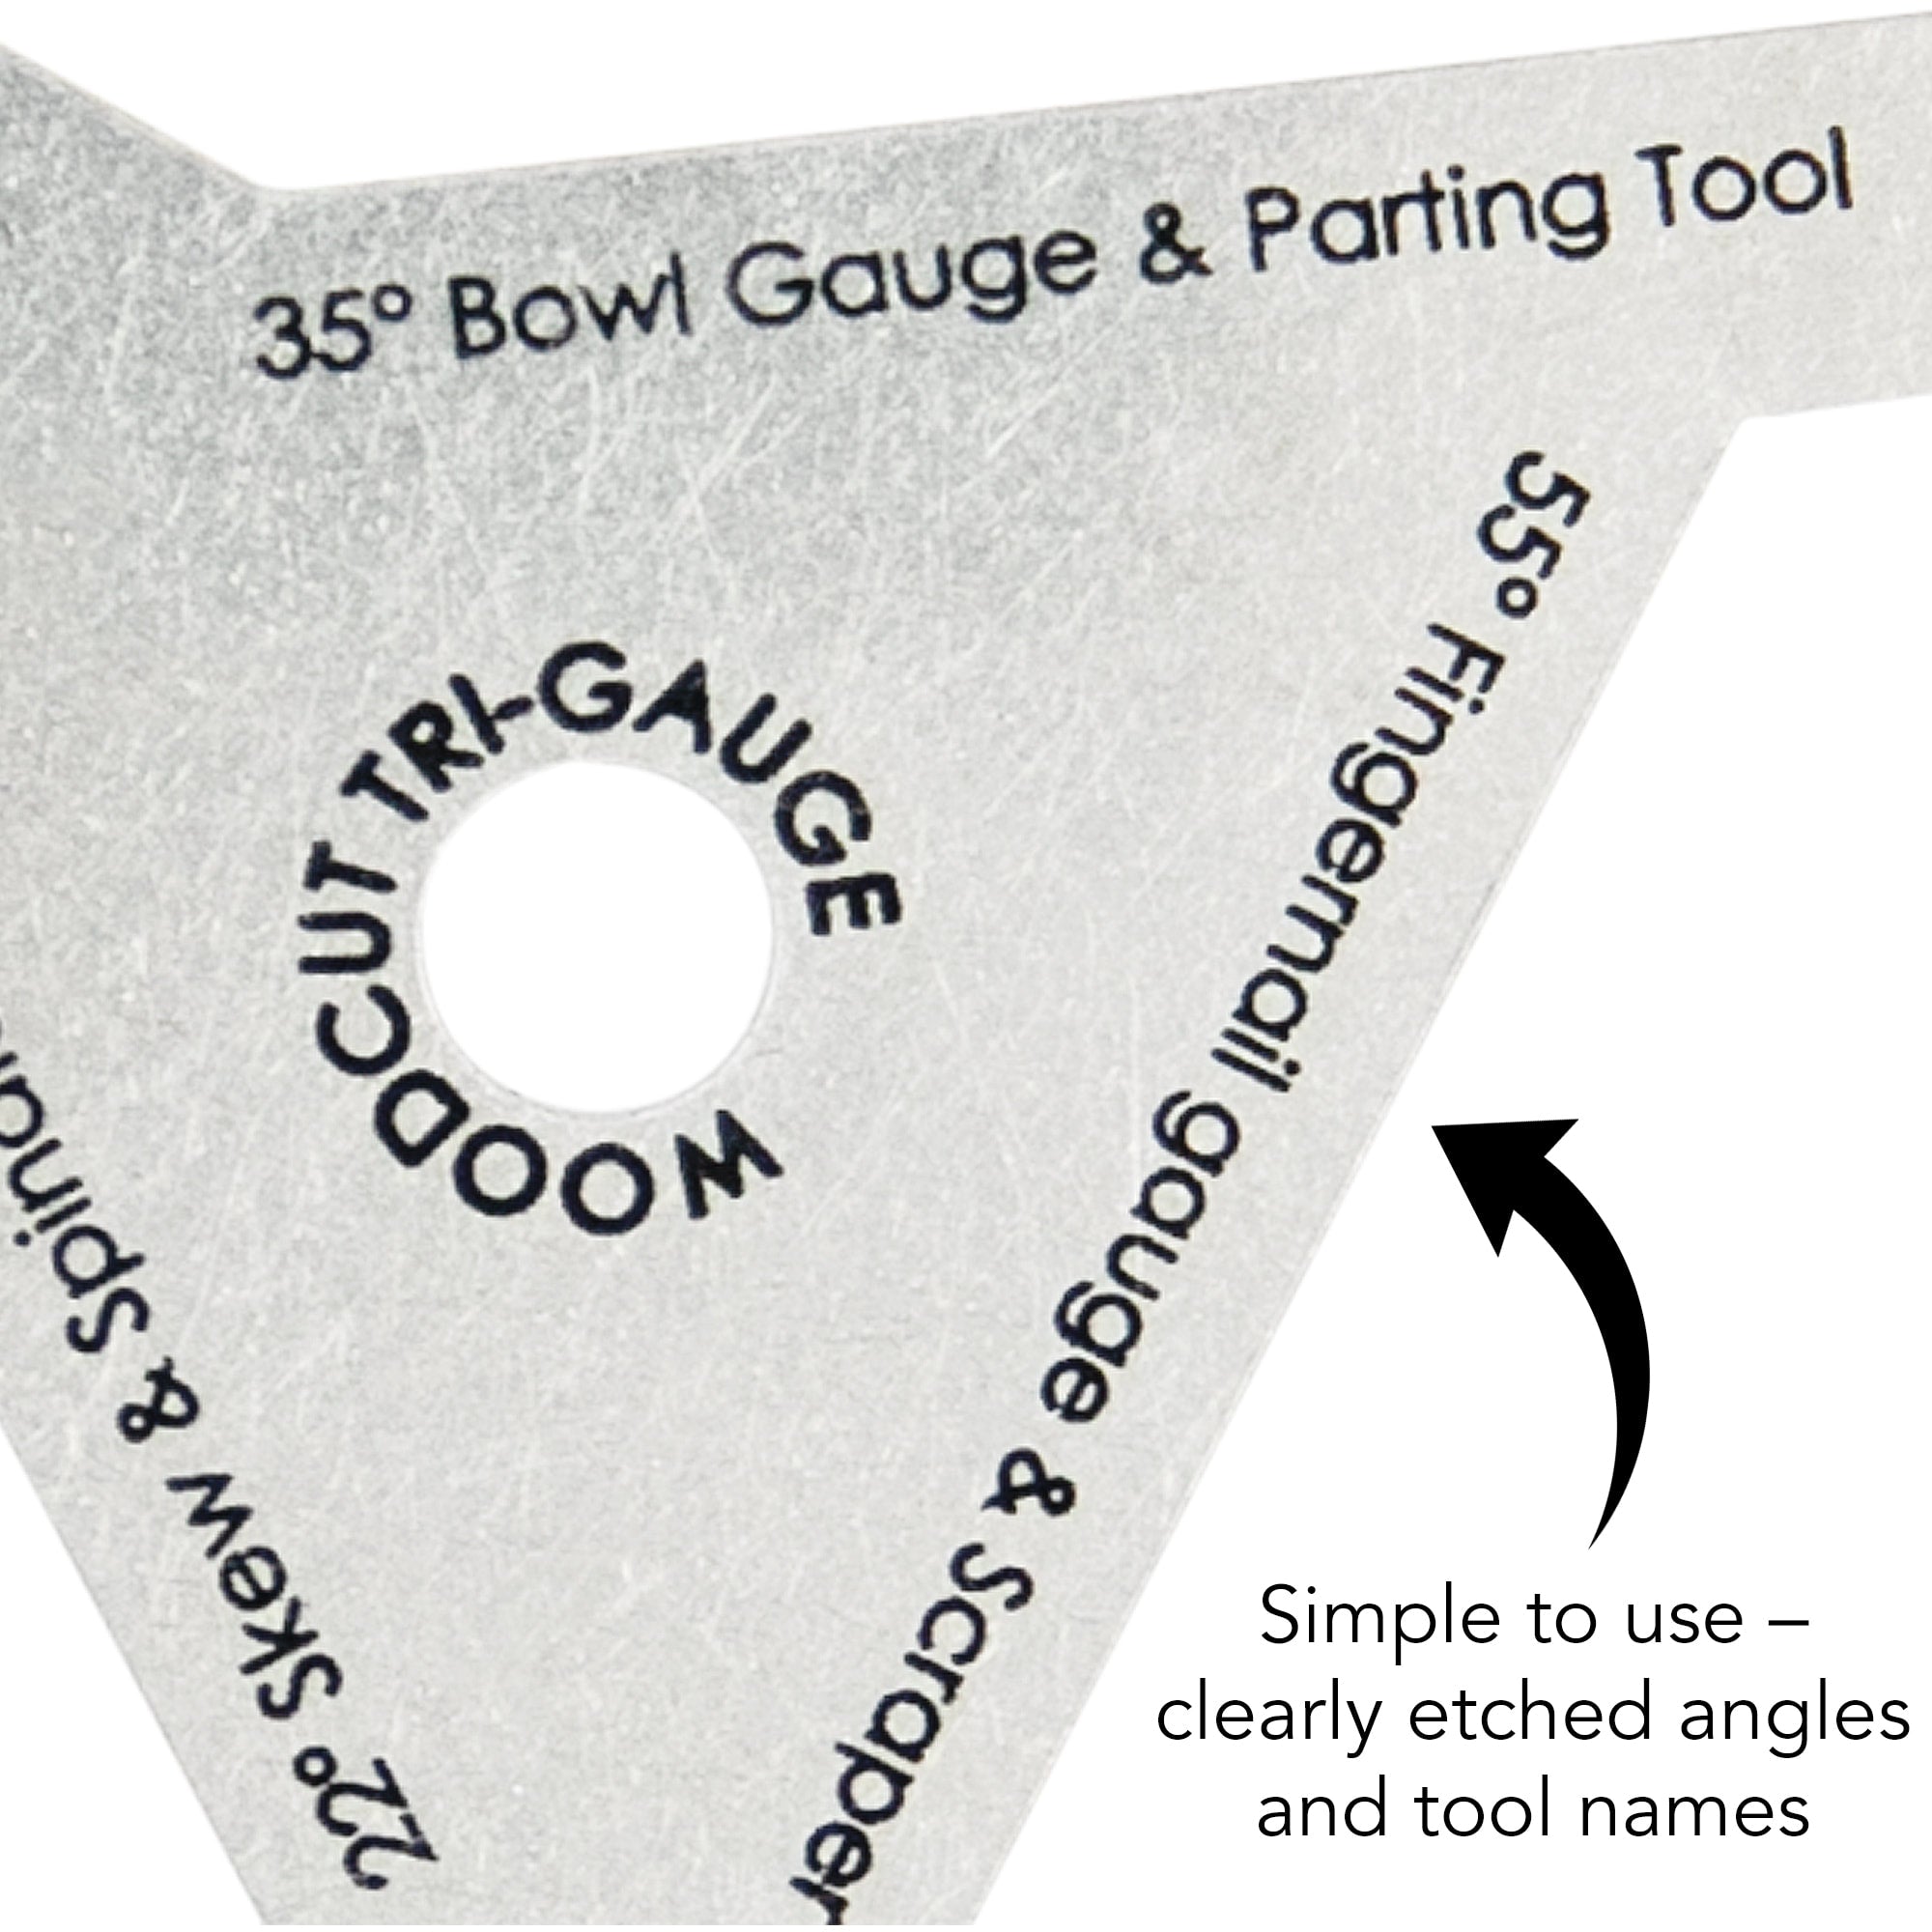 Tru-Gauge Woodworkers Angle Gauge TRIG by Woodcut Tools